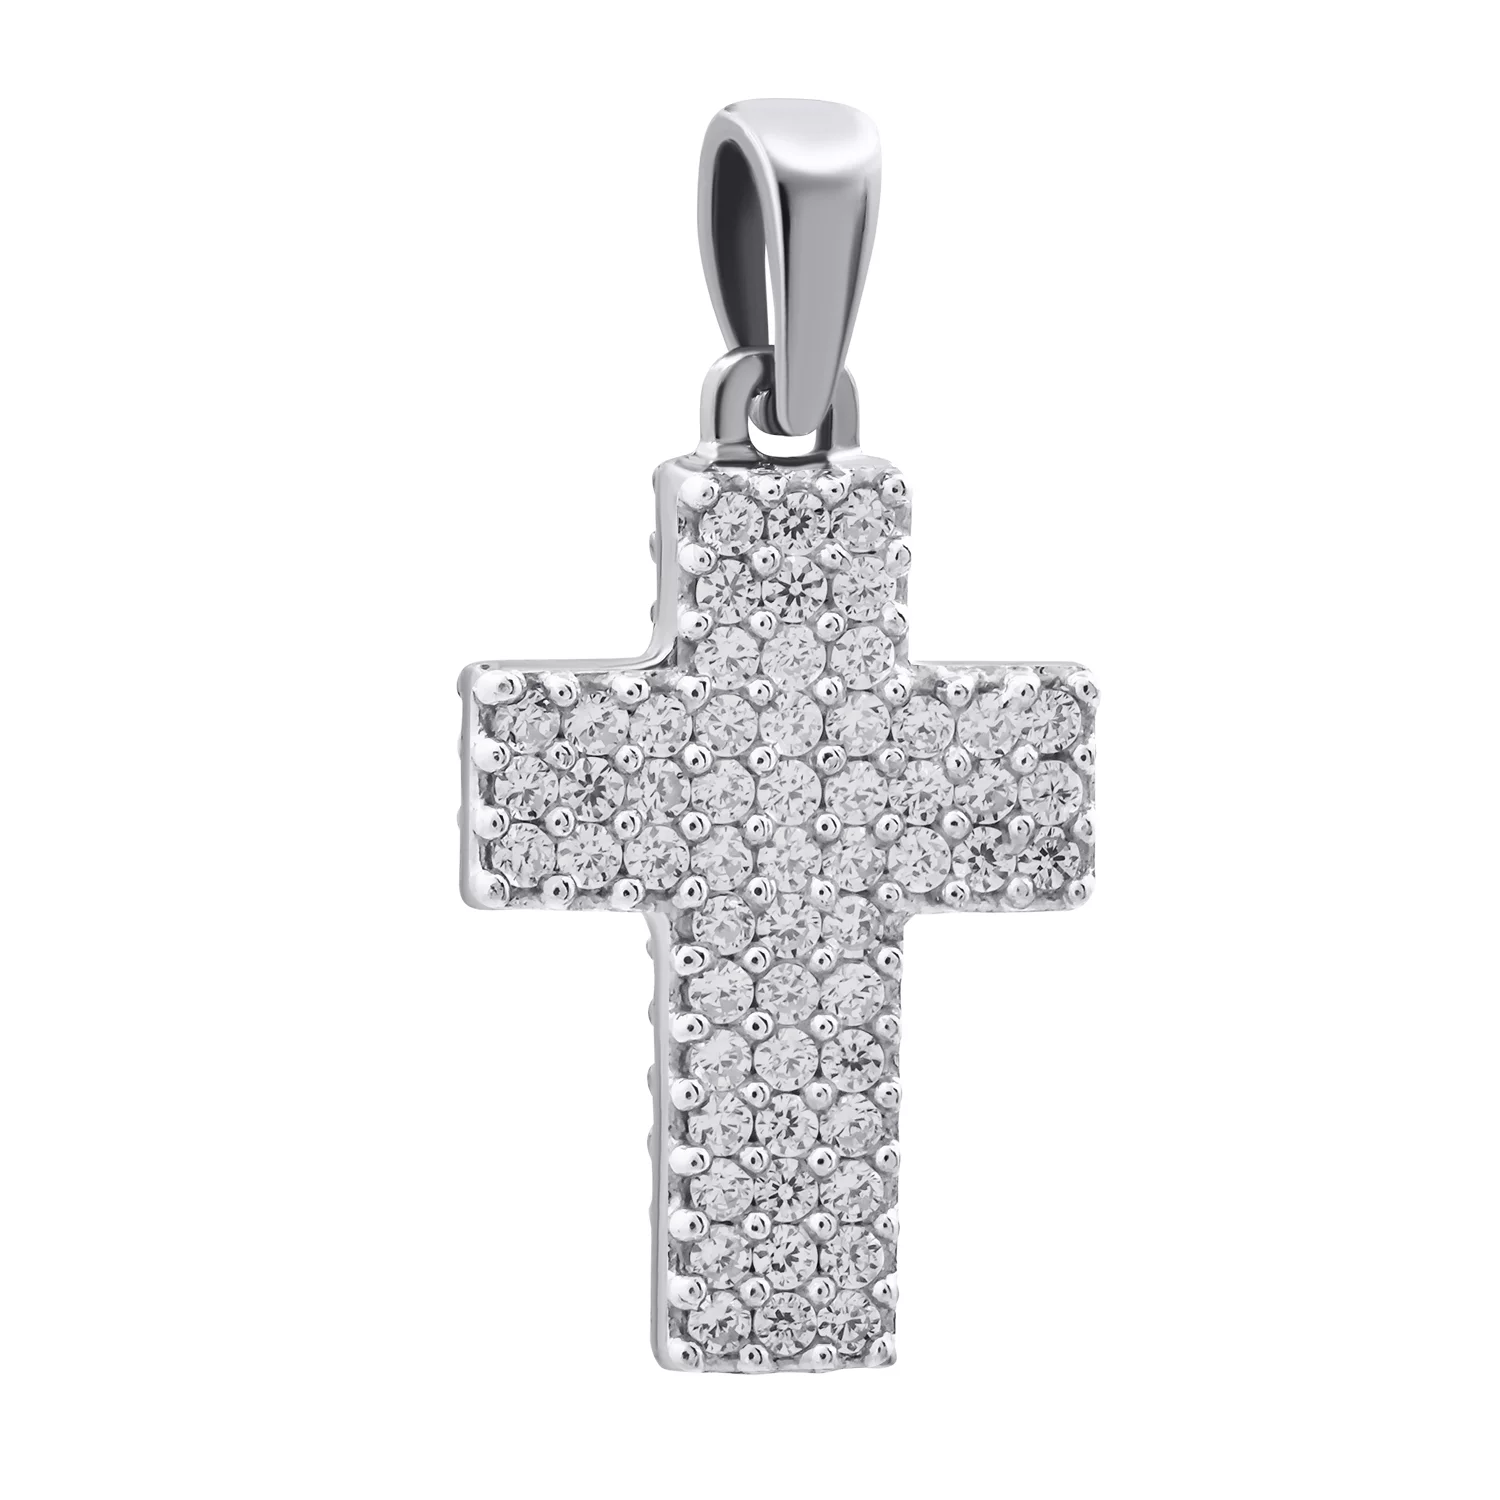 Крестик серебряный двухсторонний с фианитом. Артикул 7504/1147443: цена, отзывы, фото – купить в интернет-магазине AURUM